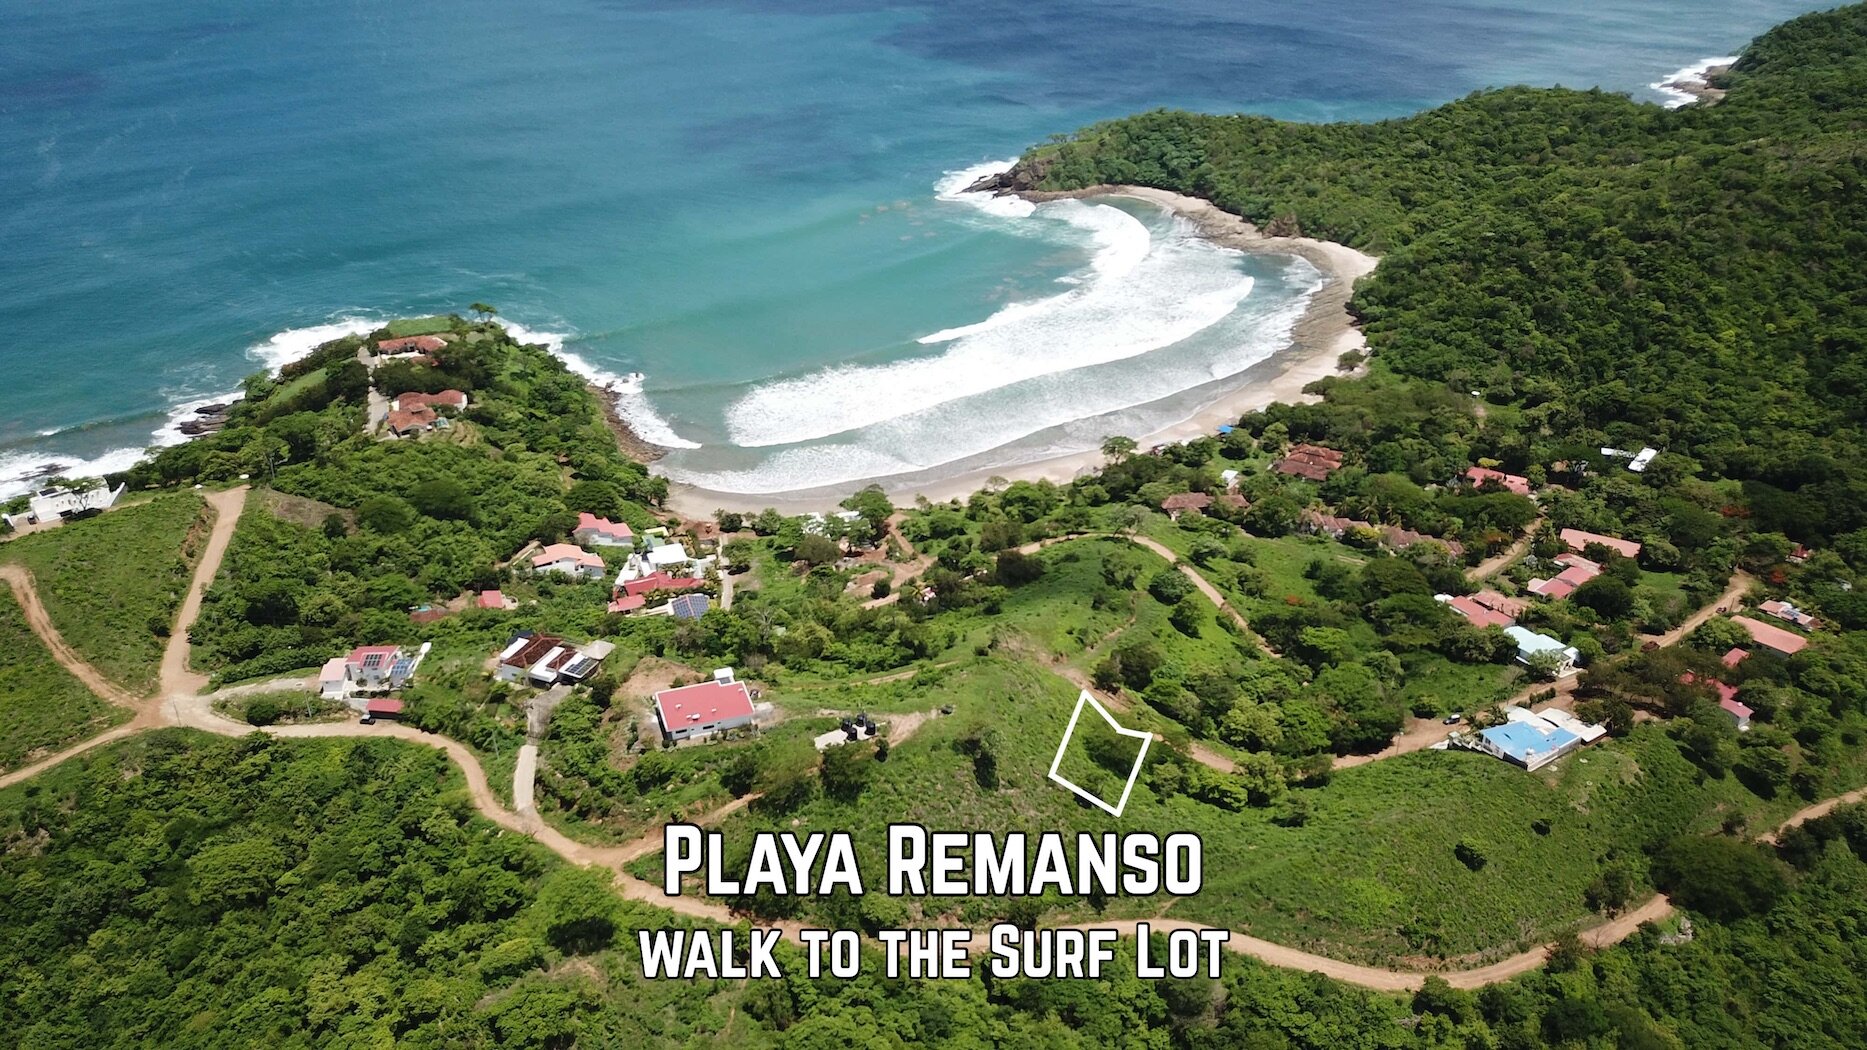 Remanso Beach Property For Sale San Juan Del Sur Nicaragua 1.jpg